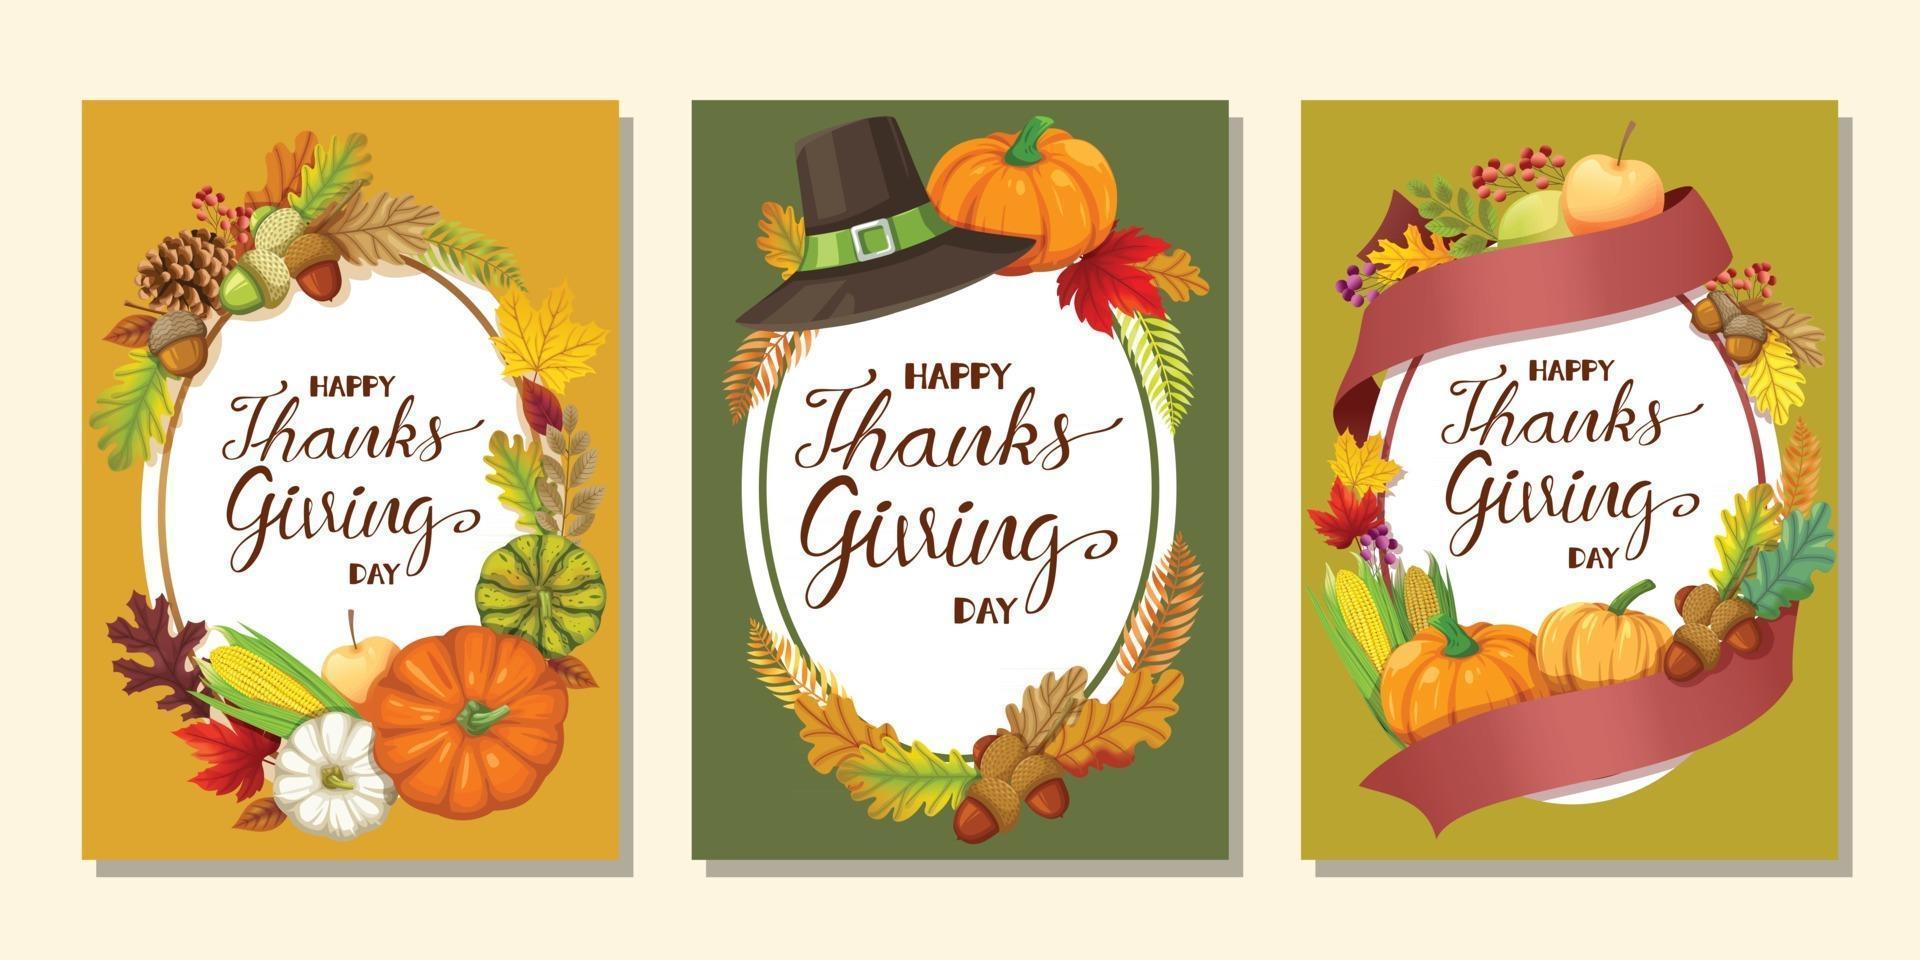 Happy Thanksgiving Day Card oder Flyer mit Kürbis, Mais, Walnüssen, Blättern und getrockneten Tannenzapfen vektor